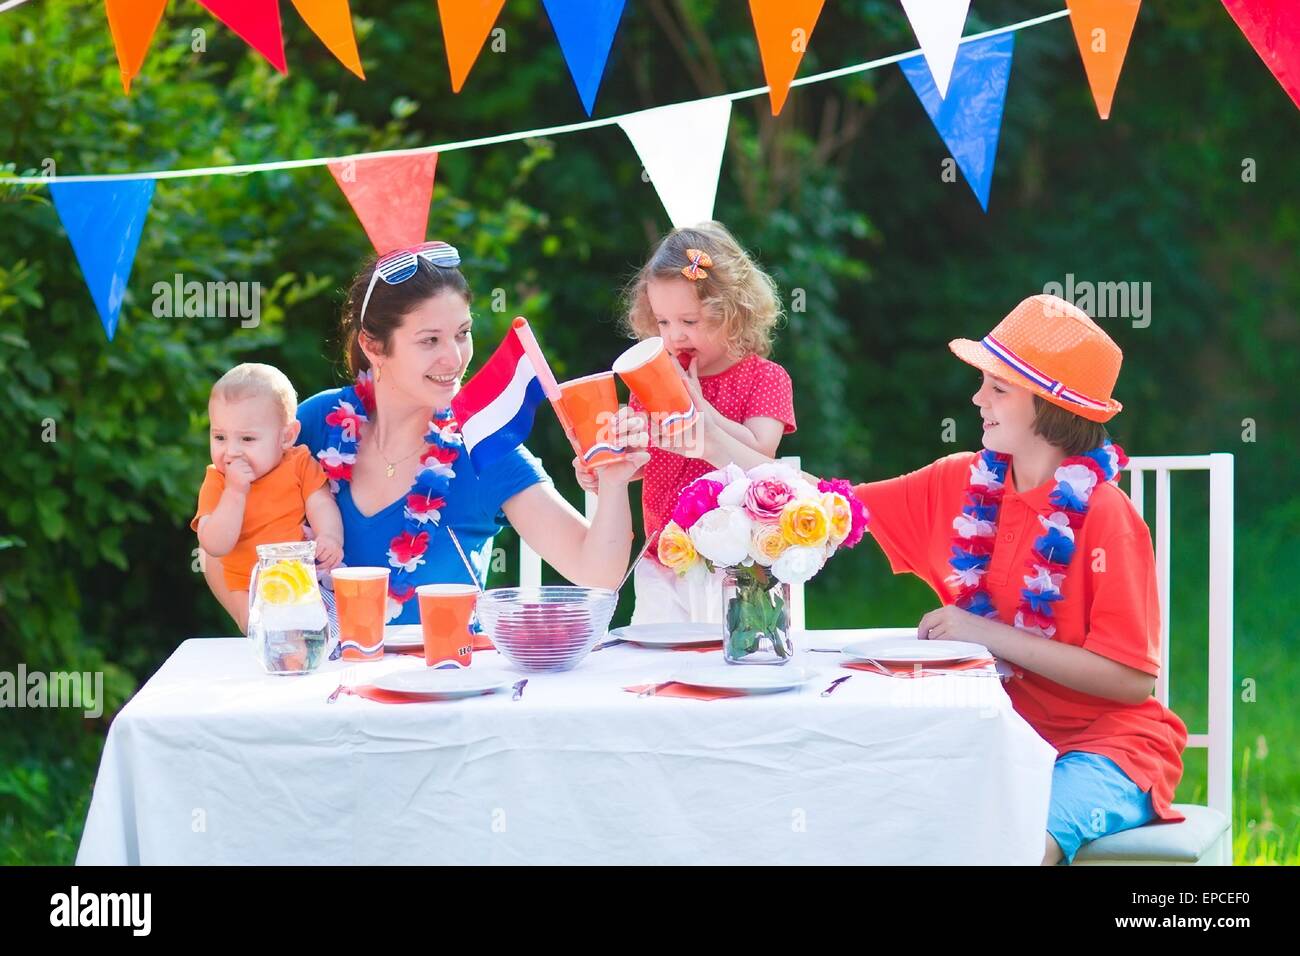 Heureux grand famille néerlandaise avec les enfants célébrer une fête nationale du sport ou s'amuser lors d'une victoire de la grillade dans un jardin decorat Banque D'Images